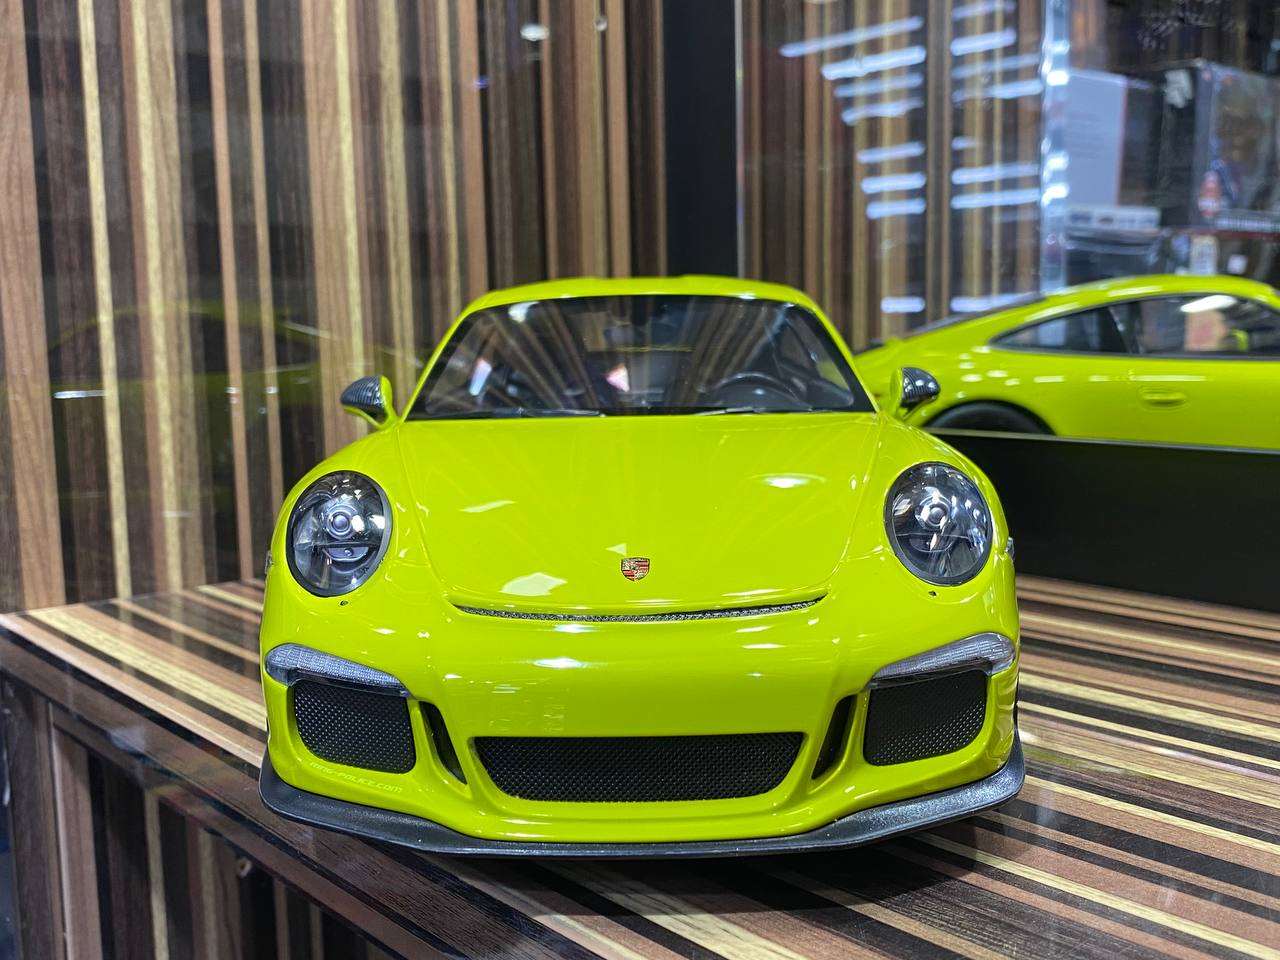 1/12 Minichamps Metal Diecast - Porsche 911 R (991.1) 2016 in Exclusive Acid Green|Sold in Dturman.com Dubai UAE.